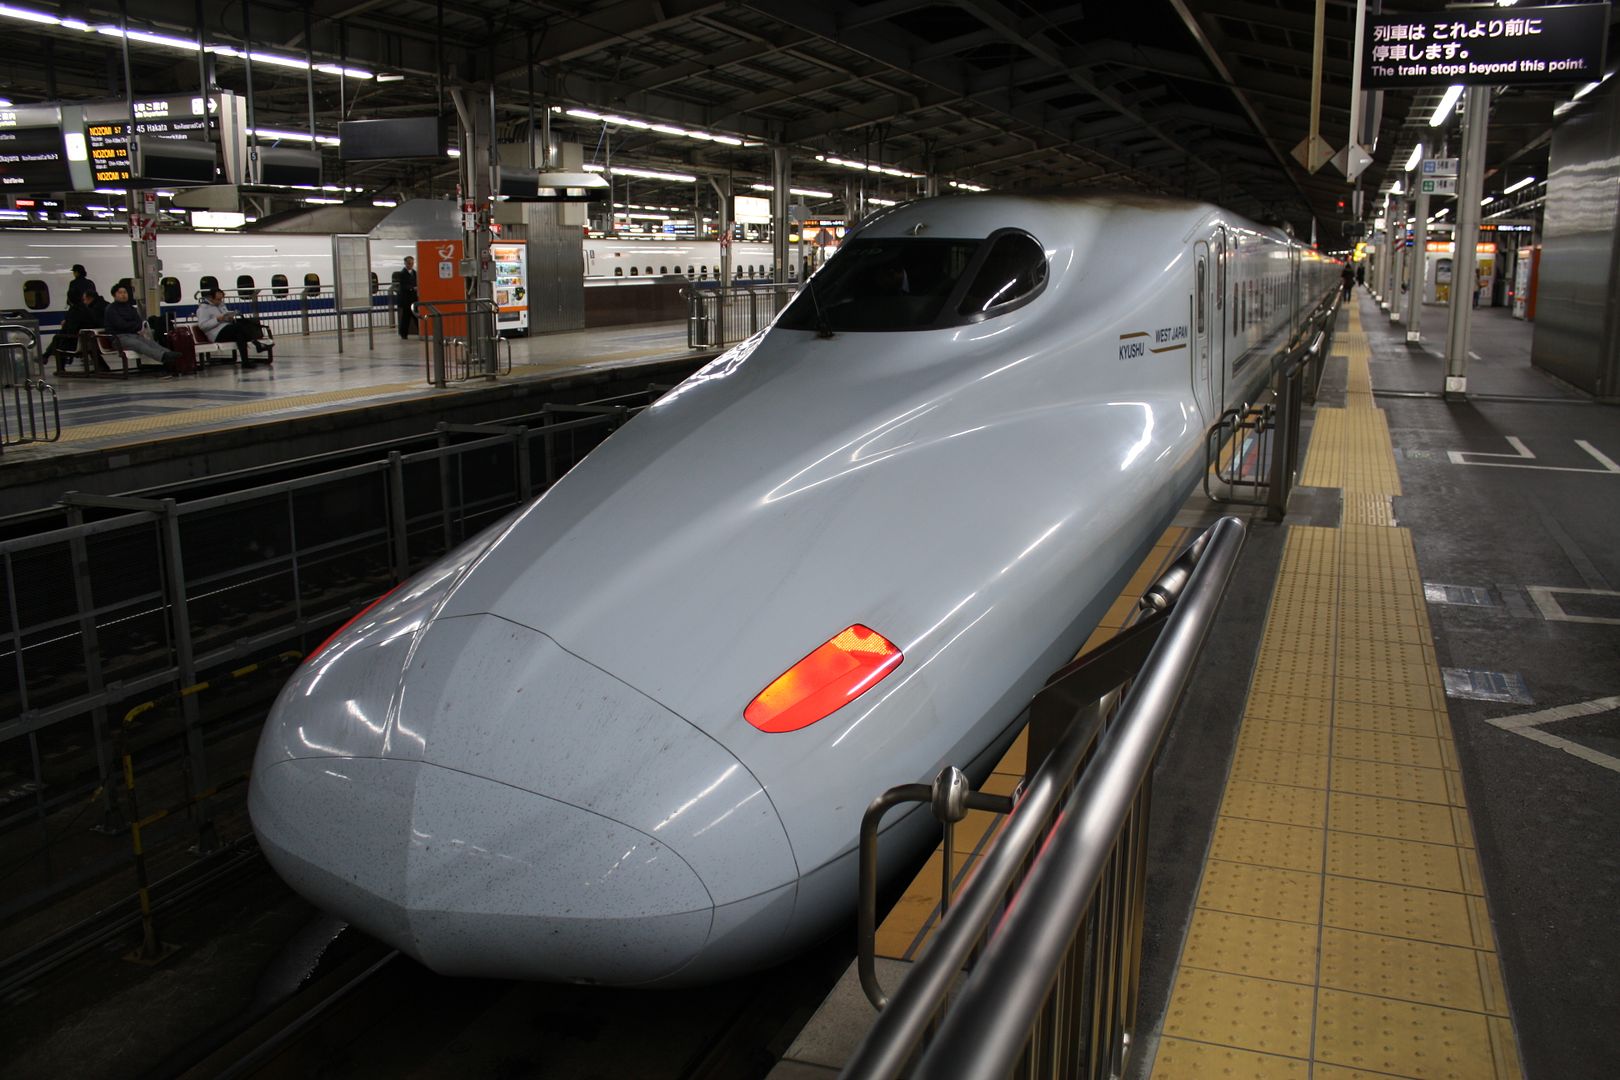 High-speed Rail Train in Japan photo 2013-12-24041929_zps943460d6.jpg